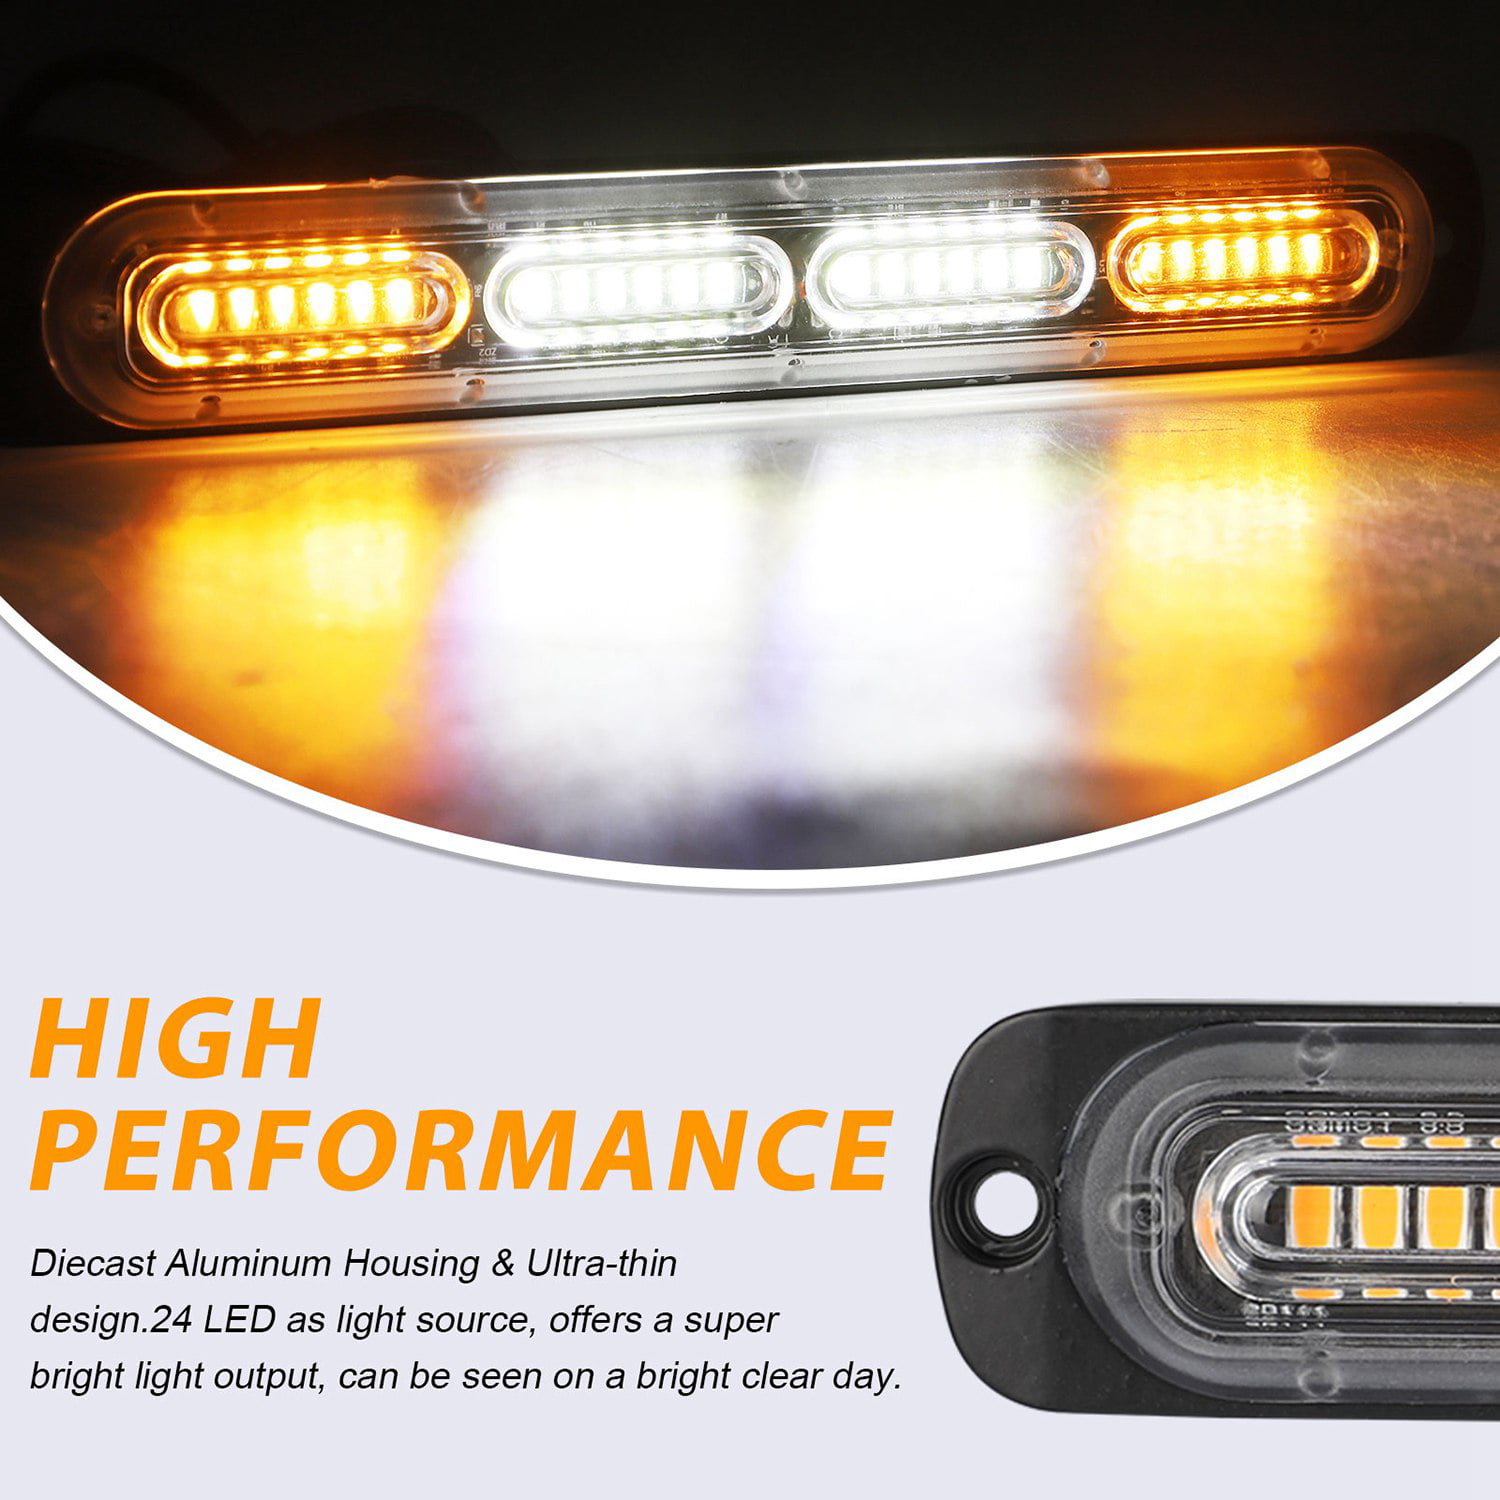 10x Amber Flash Strobe Car Trailer LED Warning Emergency Hazard Light Bar 72W 